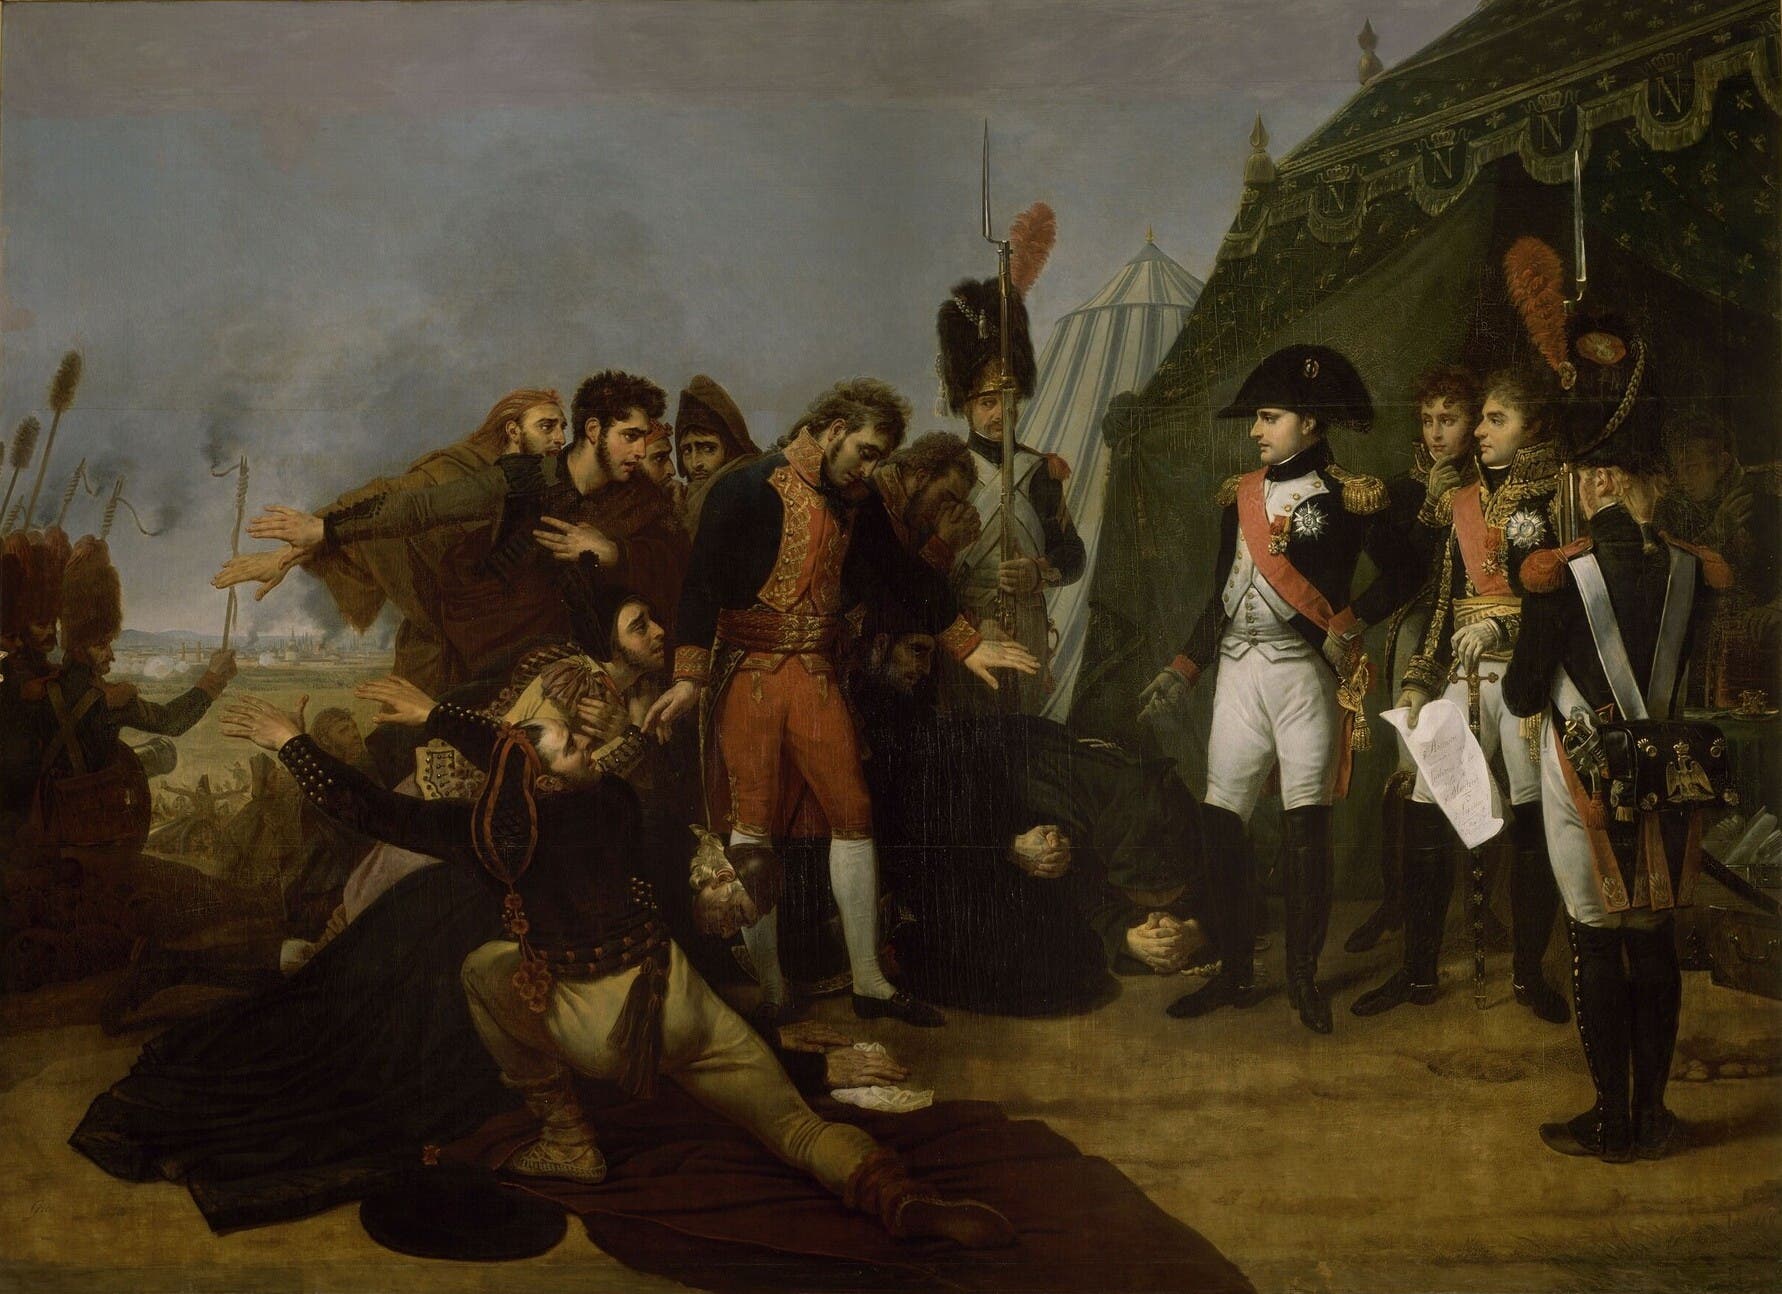 لوحة تجسد الإممبراطور الفرنسي نابليون بونابرت بإسبانيا